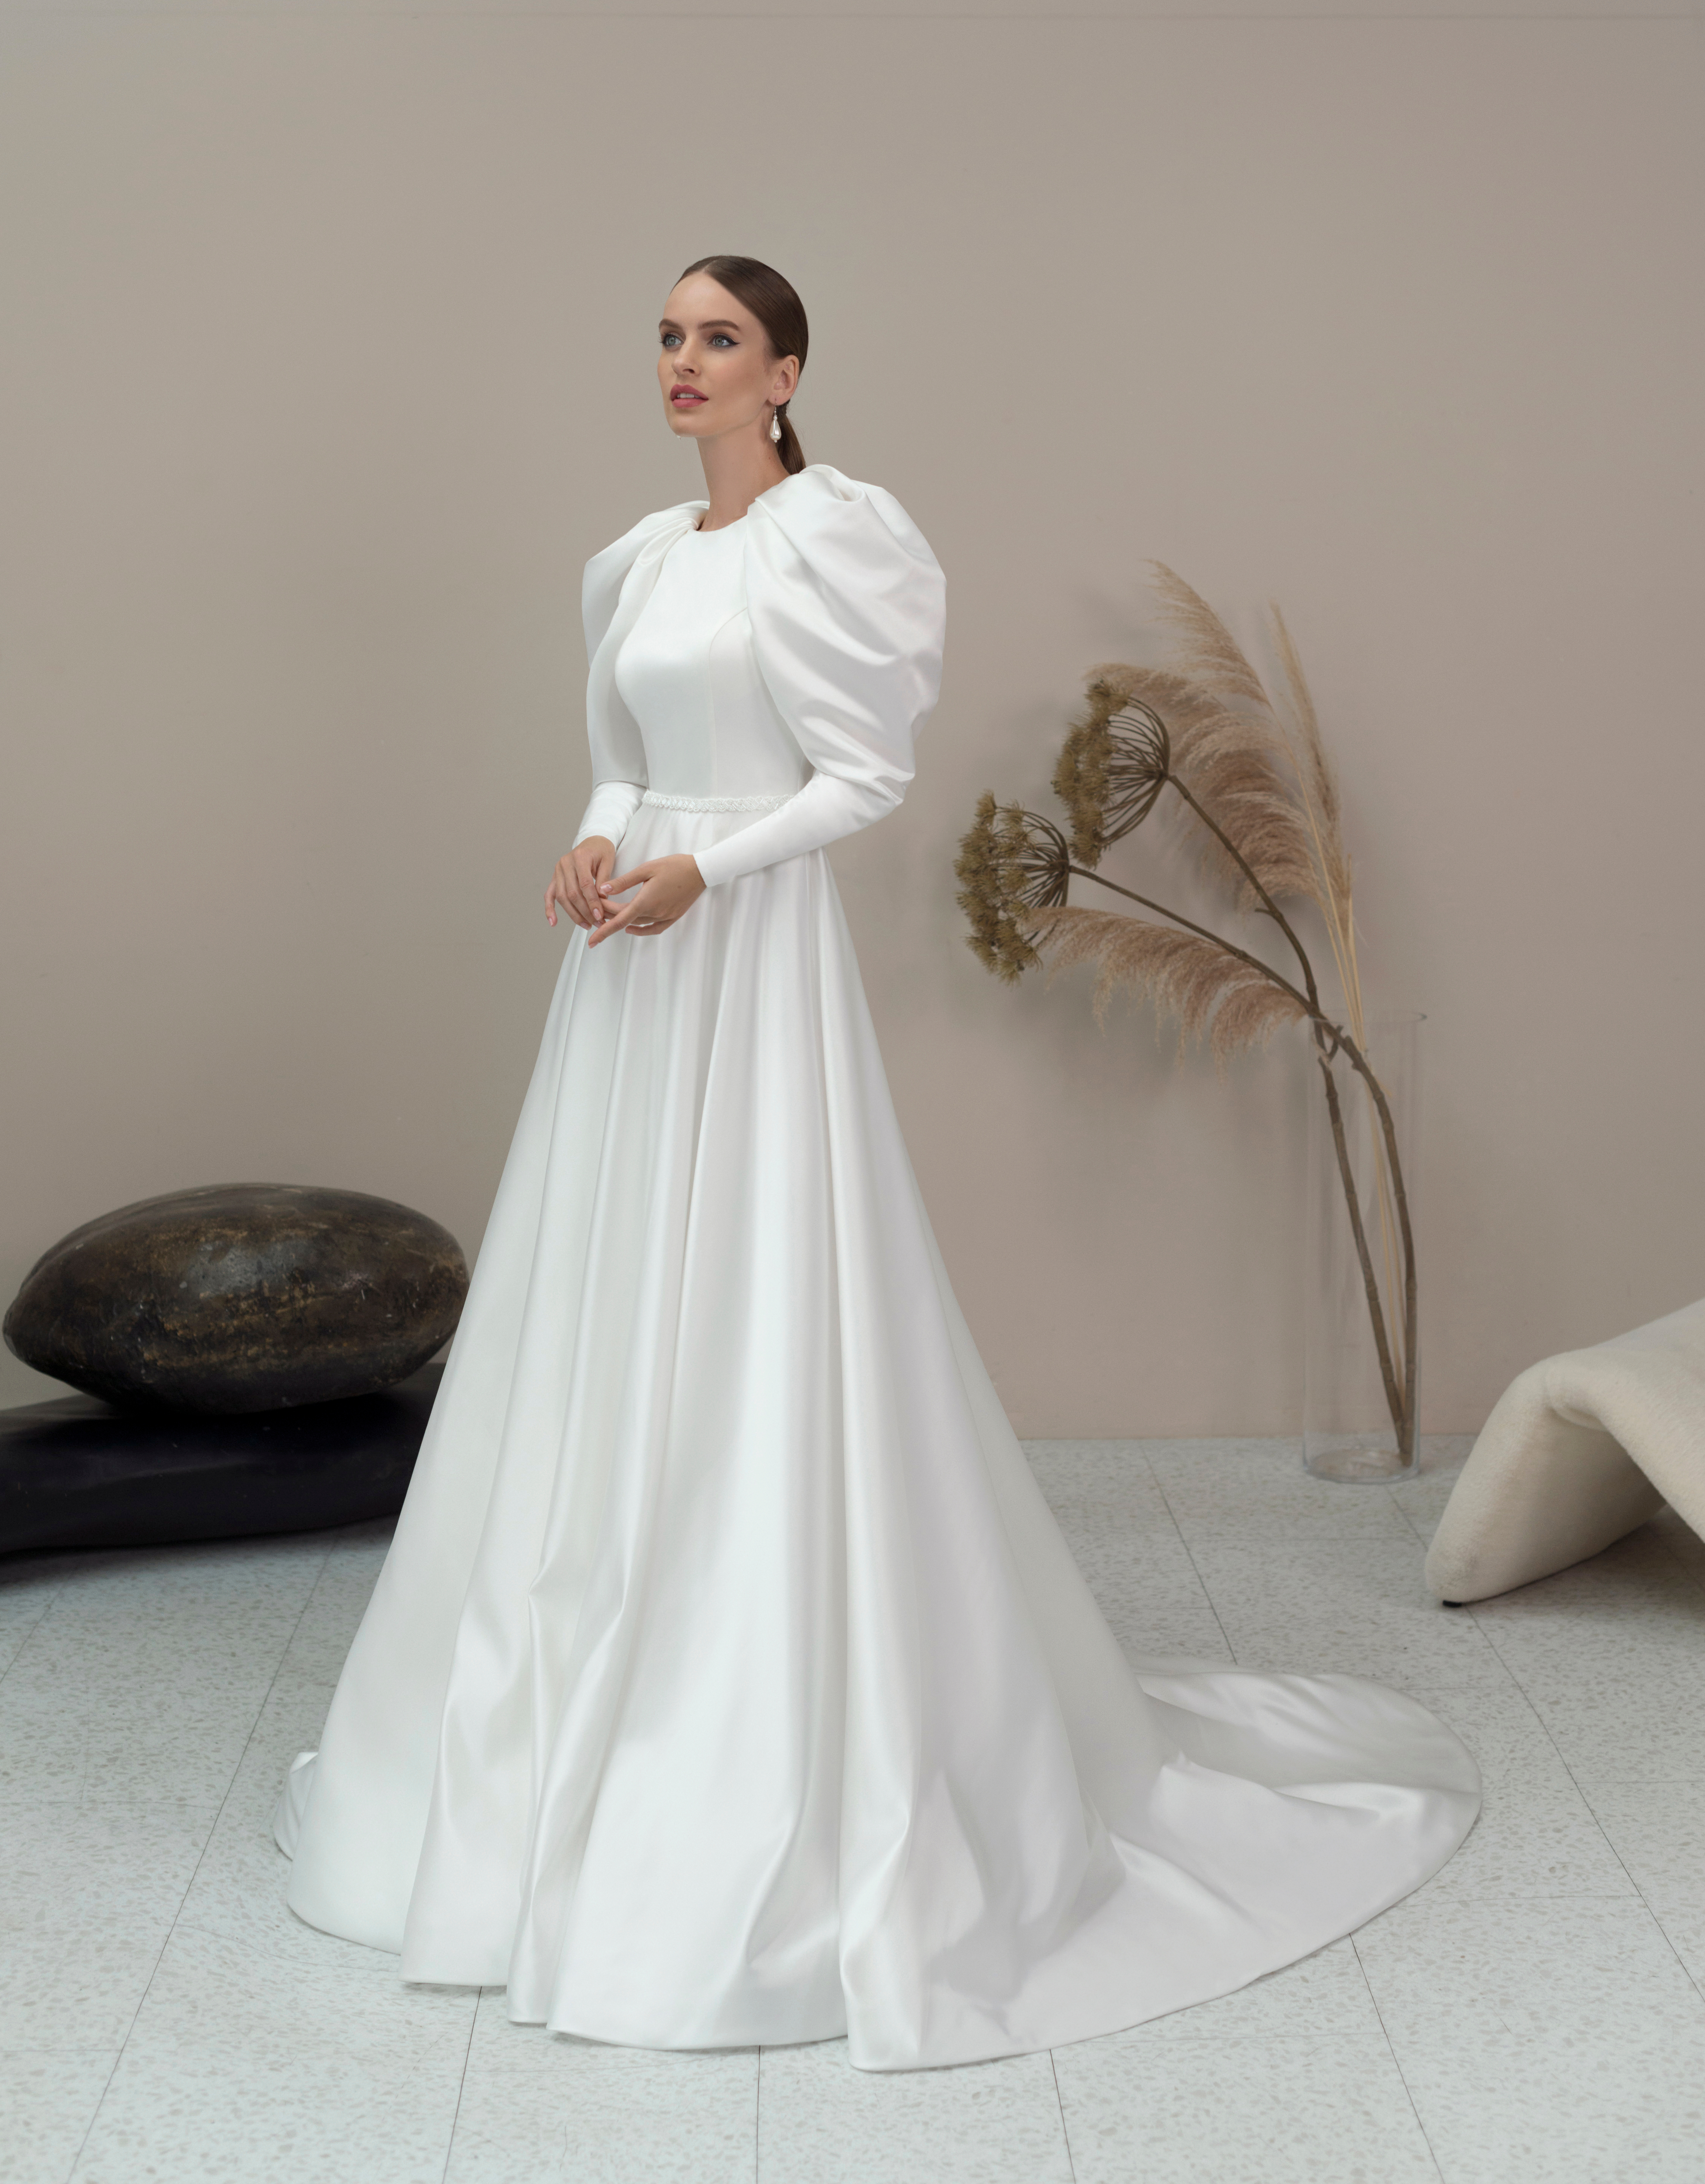 Купить свадебное платье «Камала» Мэрри Марк из коллекции 2022 года в Мэри Трюфель